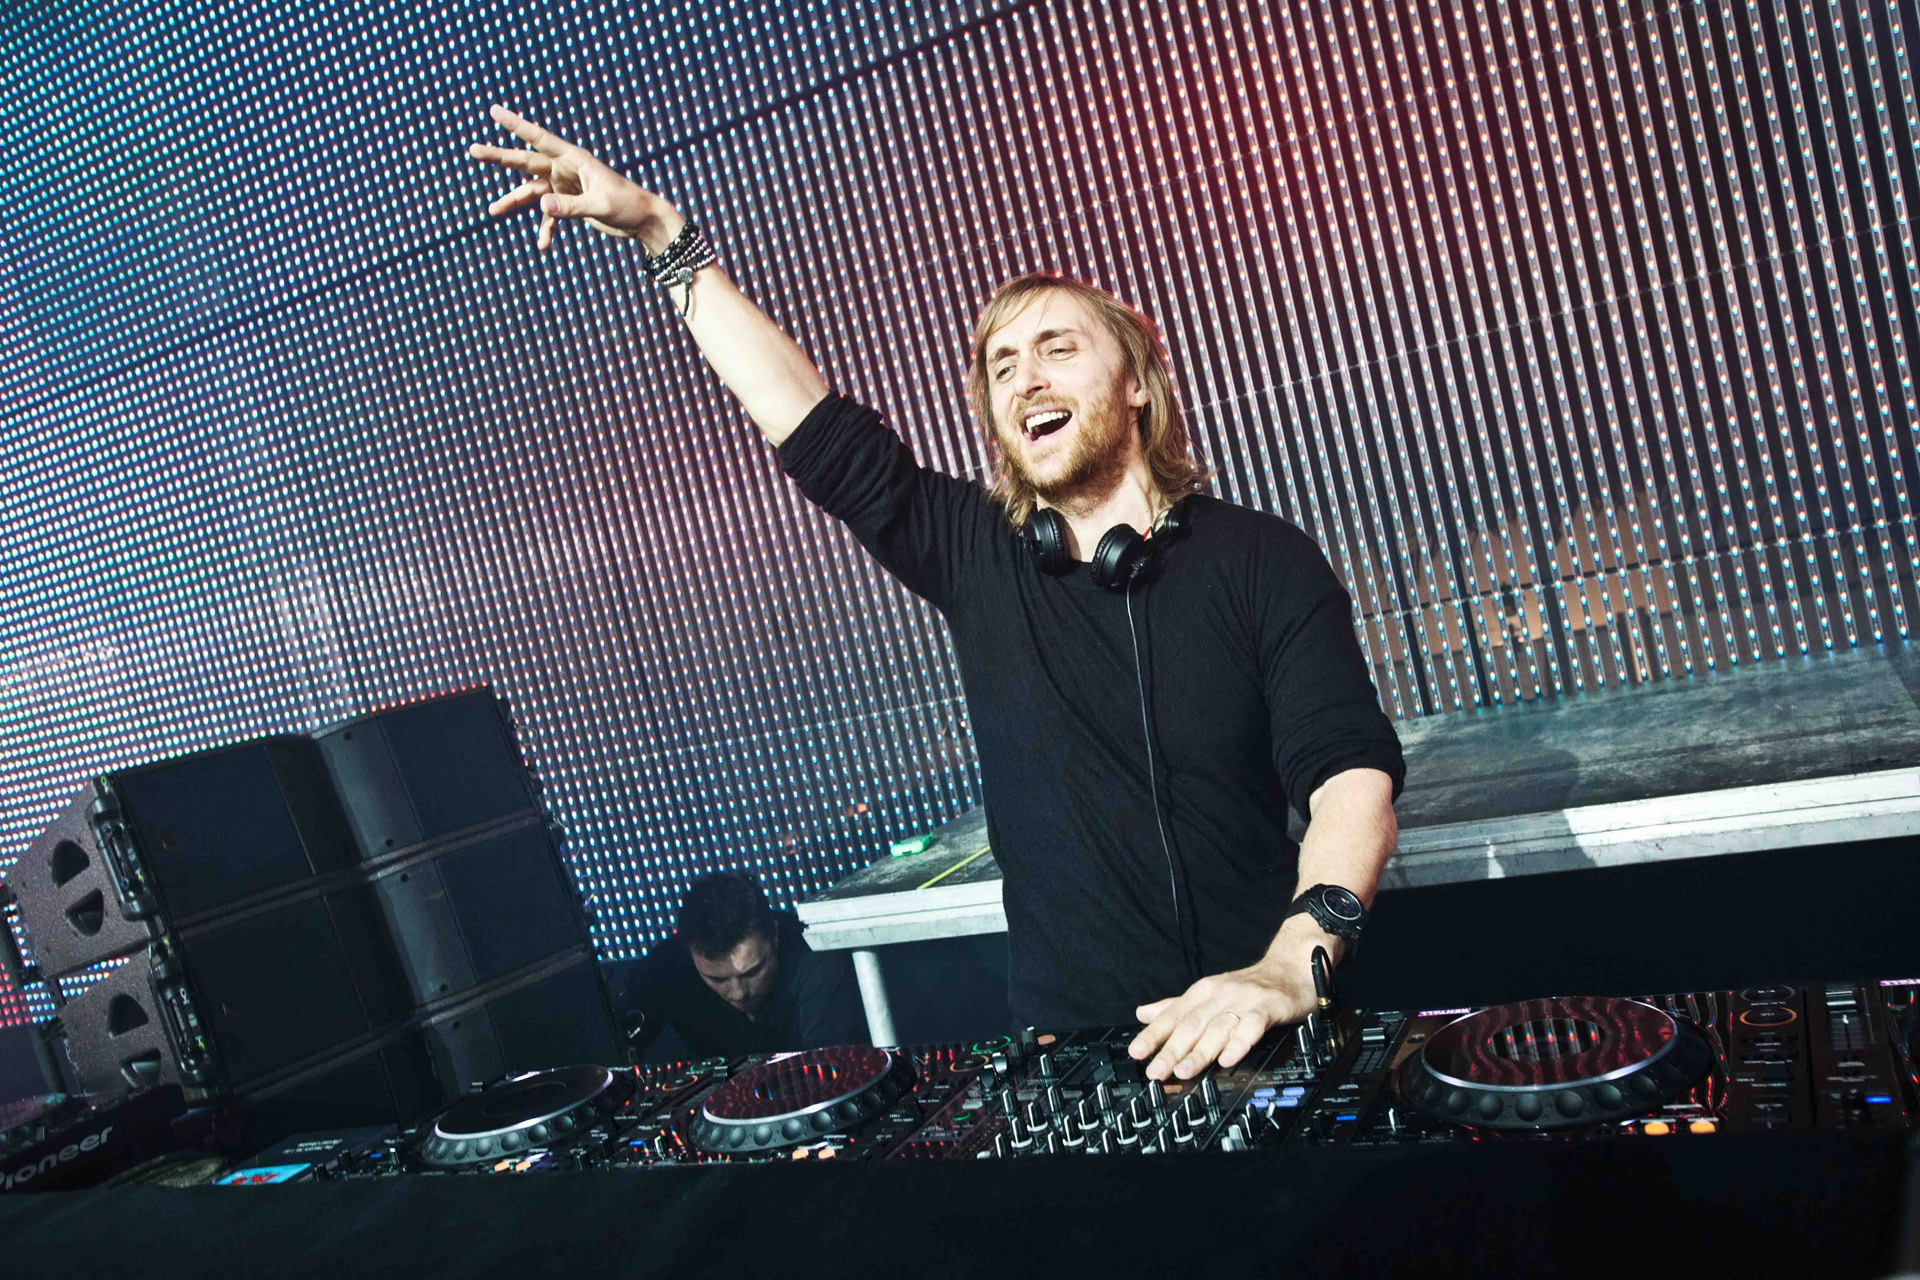 Biodata Lengkap dan Daftar Album DJ David Guetta